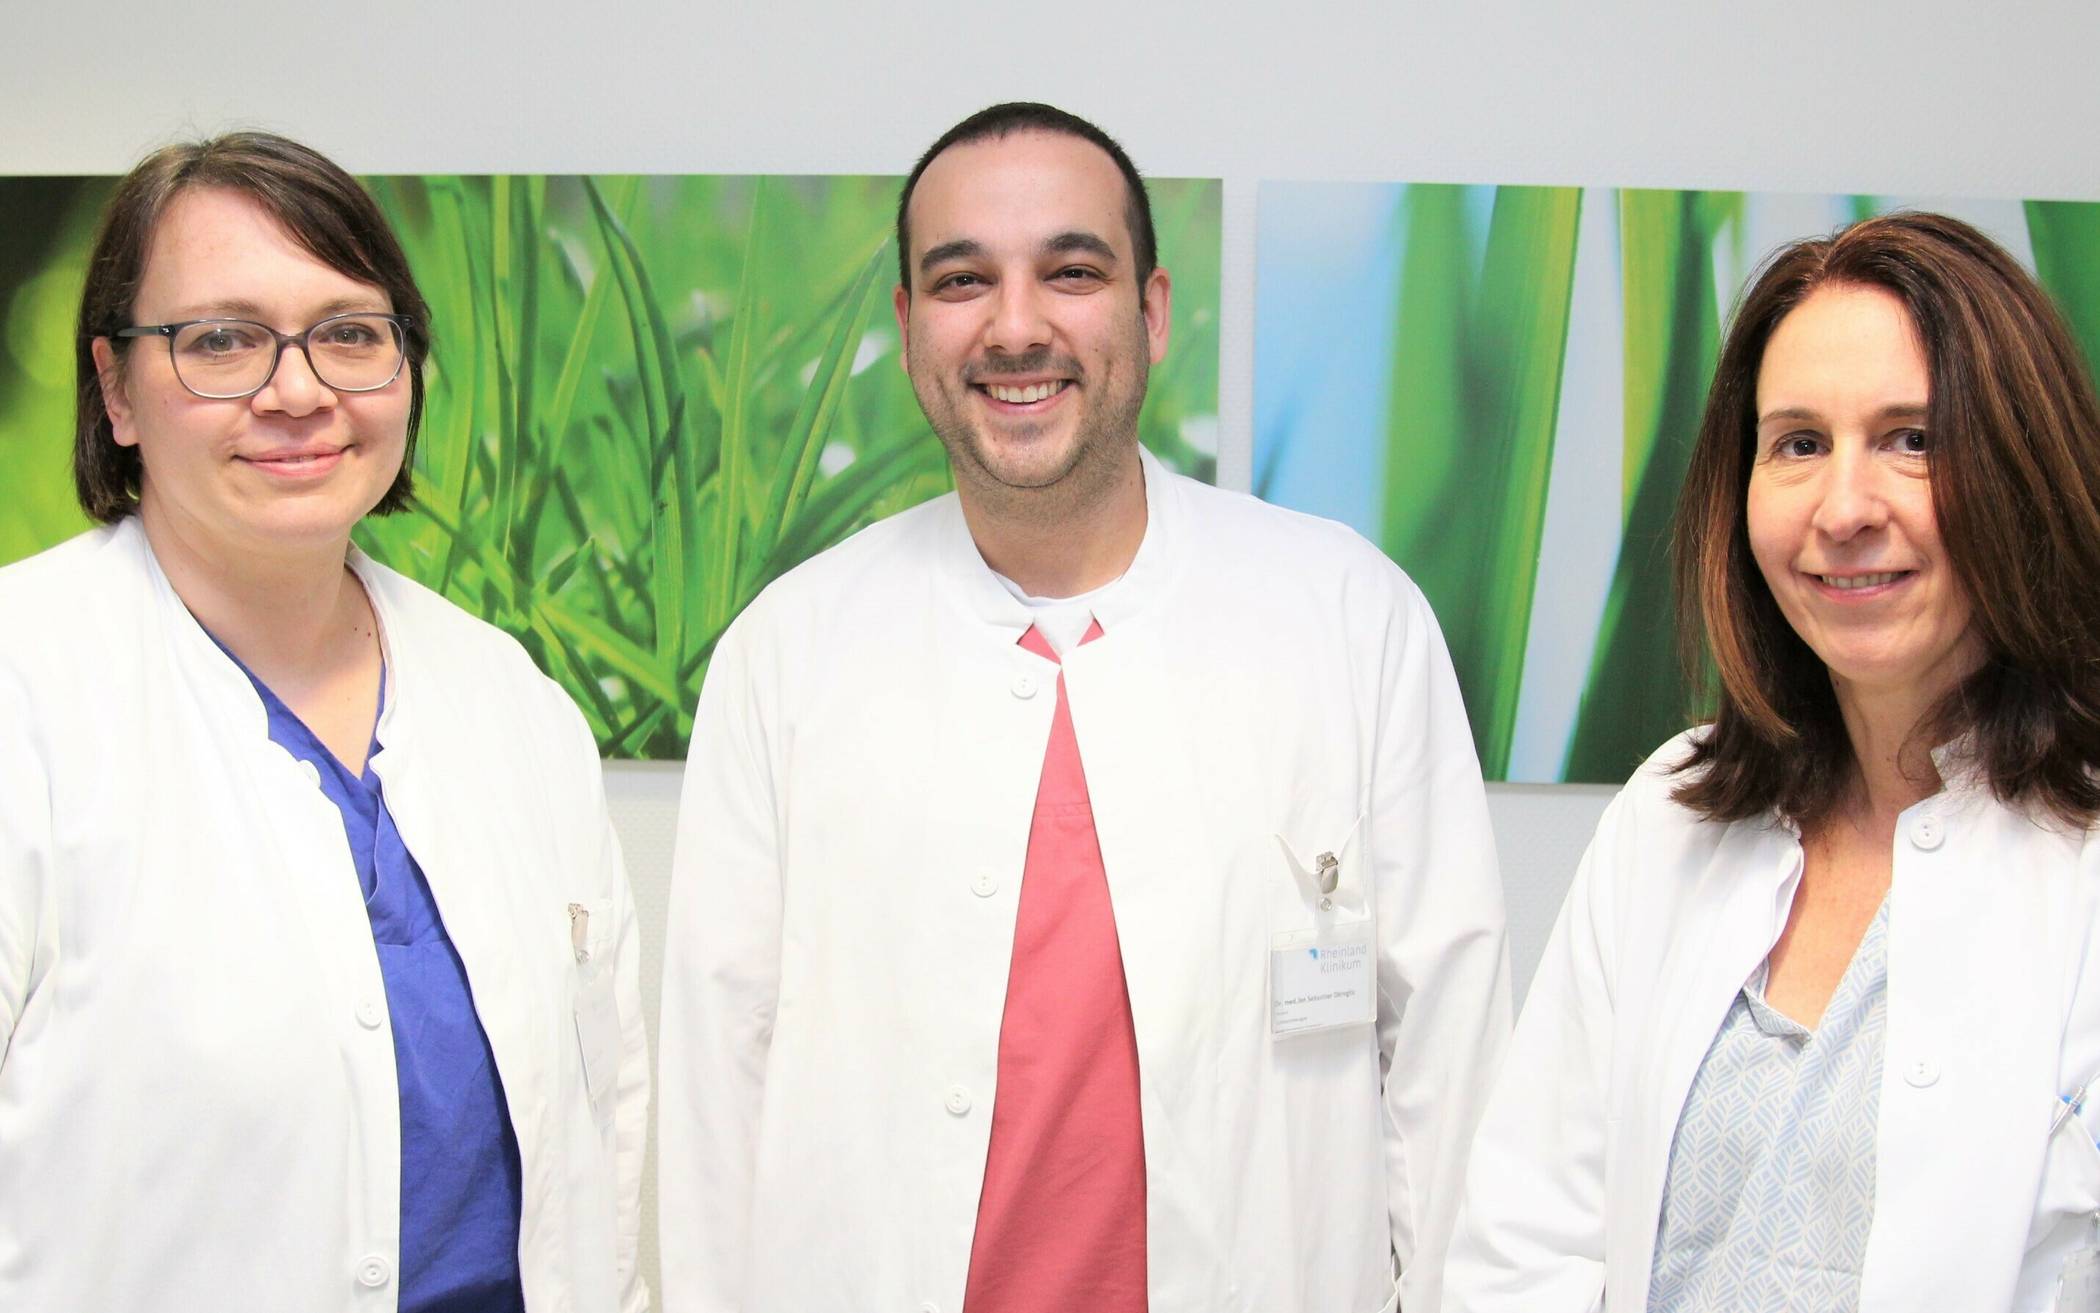 Das Team der Schmerzmedizin um die Oberärzte Yvonne Spichal, Dr. Jan Sebastian Okroglic und Dr. Orsolya Csaba (von links) beteiligt sich mit einem abwechslungsreichen Programm am bundesweiten „Aktionstag gegen den Schmerz“ am 6. Juni.